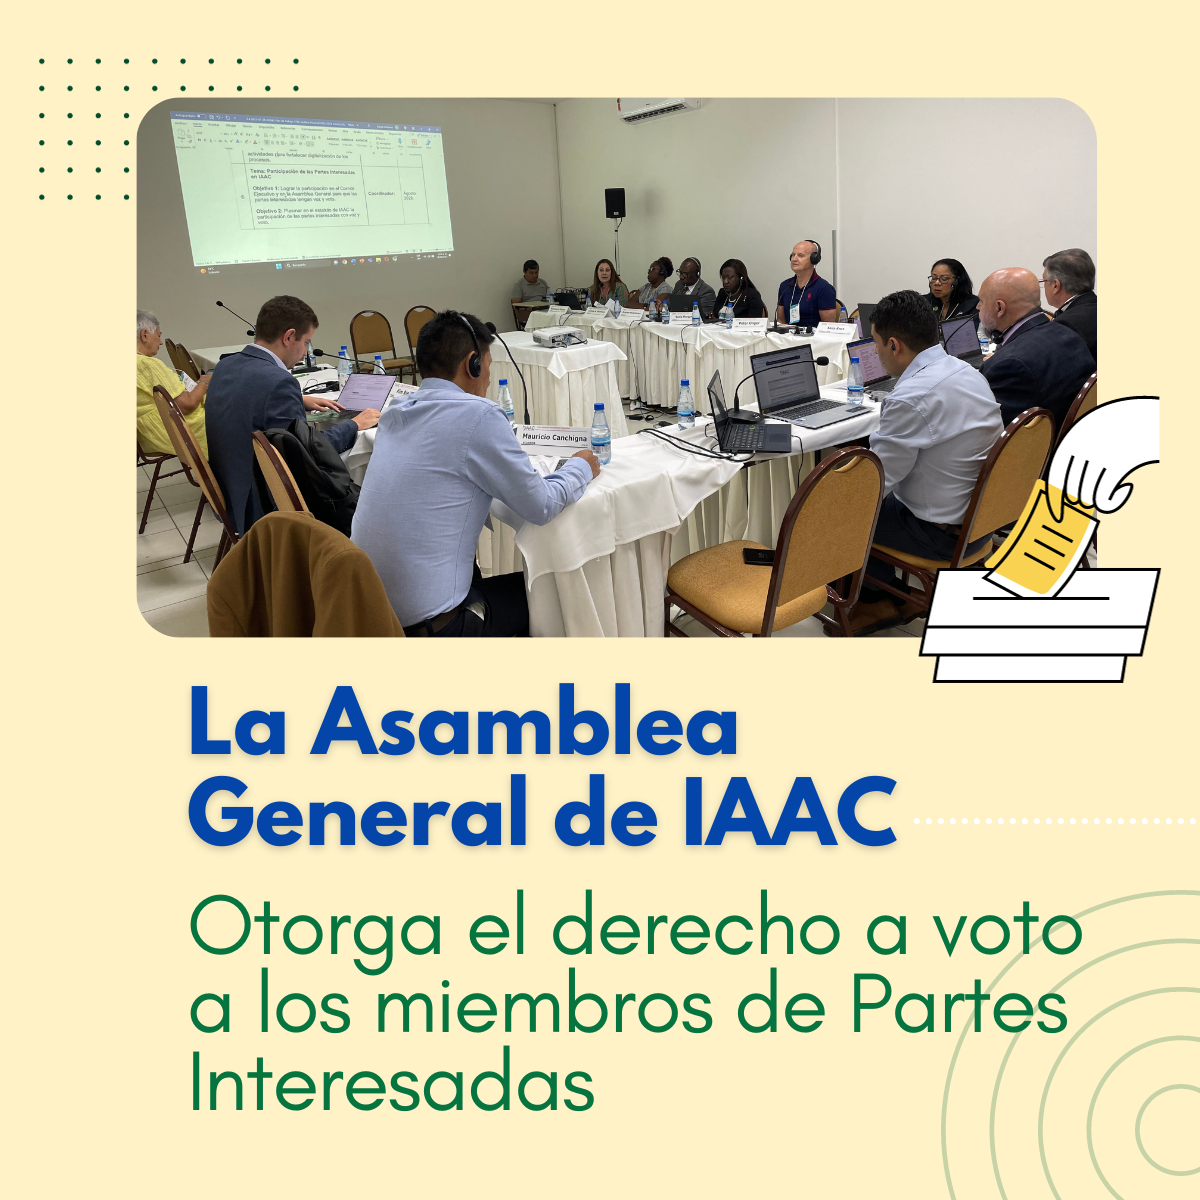 La Asamblea General de IAAC otorga el derecho a voto a los miembros de Partes Interesadas